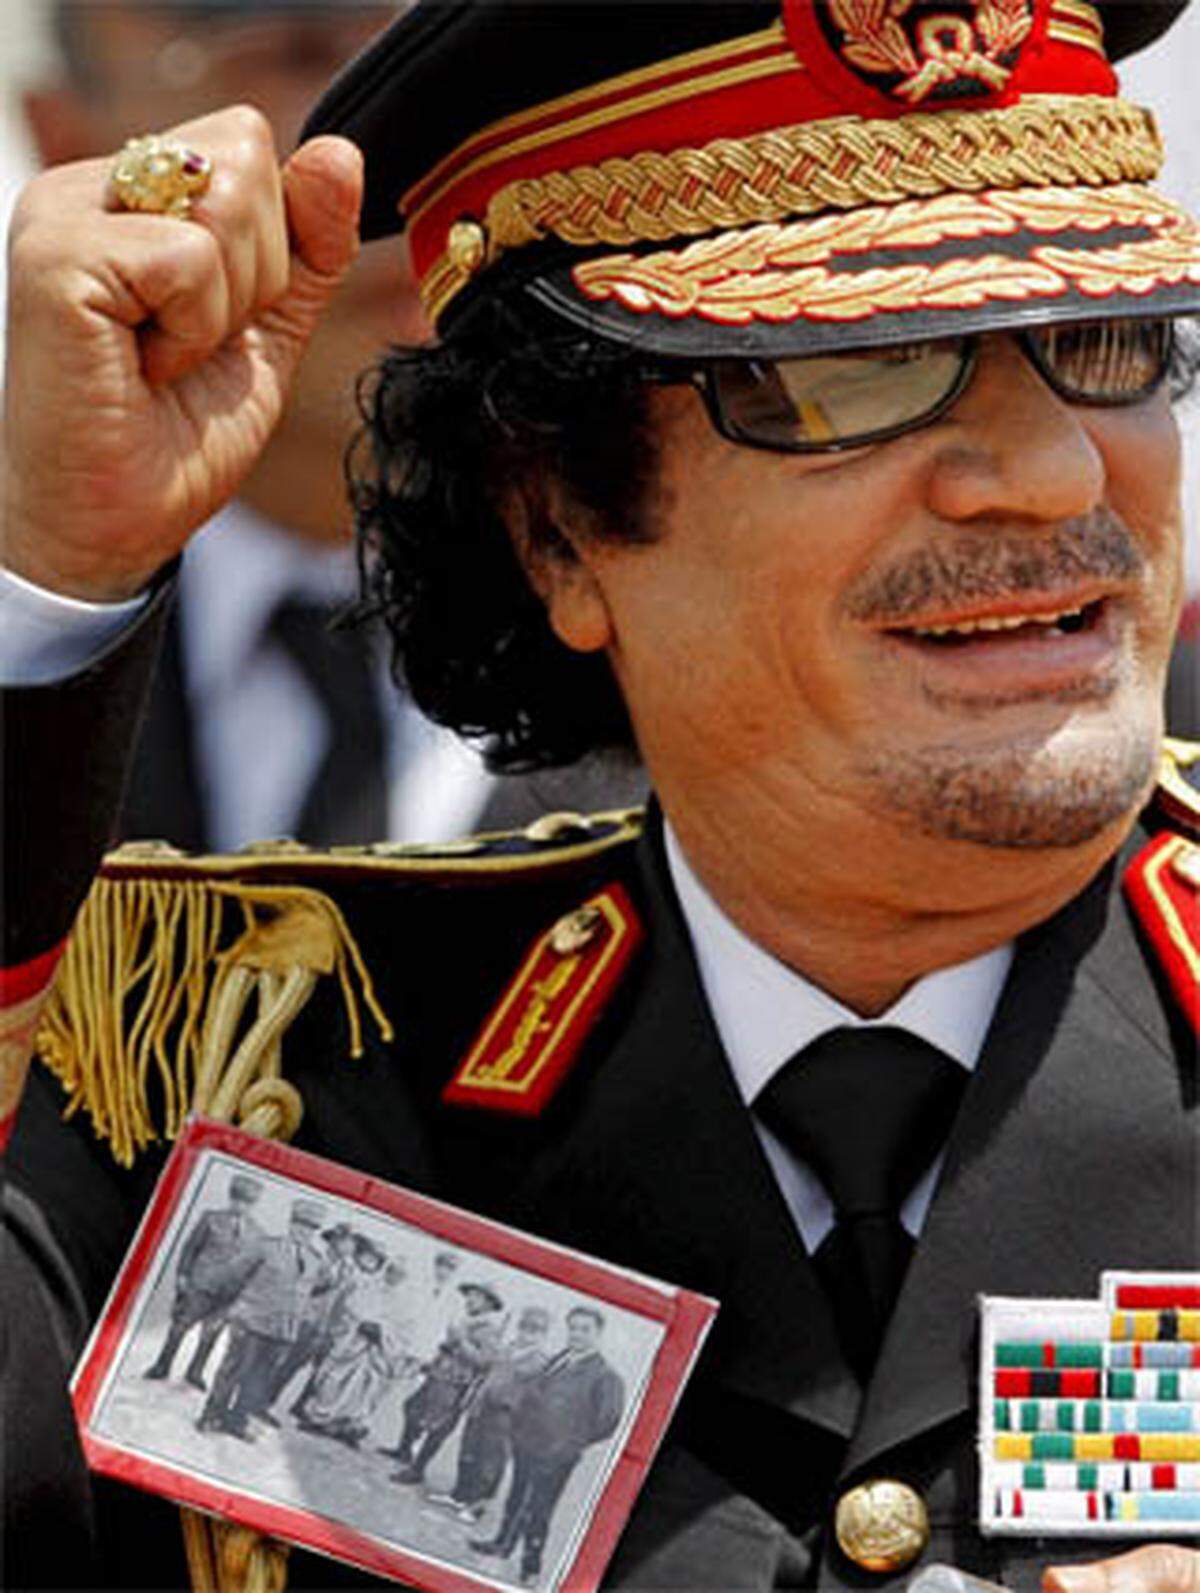 Der findige Diktator benutzt seine Kleidung auch schon einmal als politisches Statement: Auf seine fantasieartig wirkende Uniform pinnte er sich bei einem Italien-Besuch ein Bild des Helden des anti-italienischen Widerstands in Libyen.